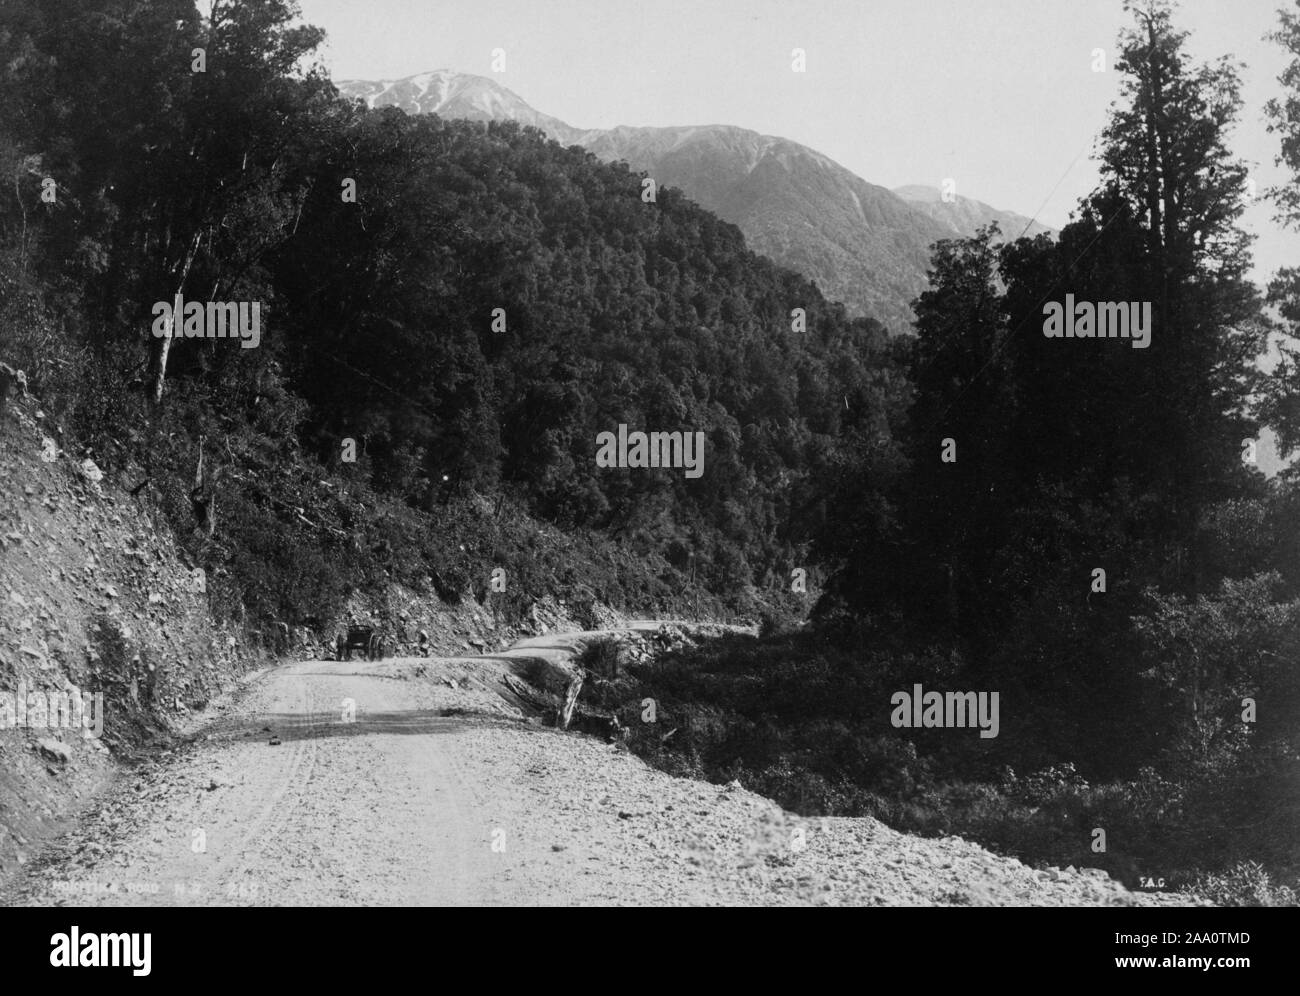 Photographie en noir et blanc d'un espace boisé et montagneux, une route menant à Hokitika, dans l'île du Sud, Nouvelle-Zélande, par le photographe Frank Coxhead, 1885. À partir de la Bibliothèque publique de New York. () Banque D'Images